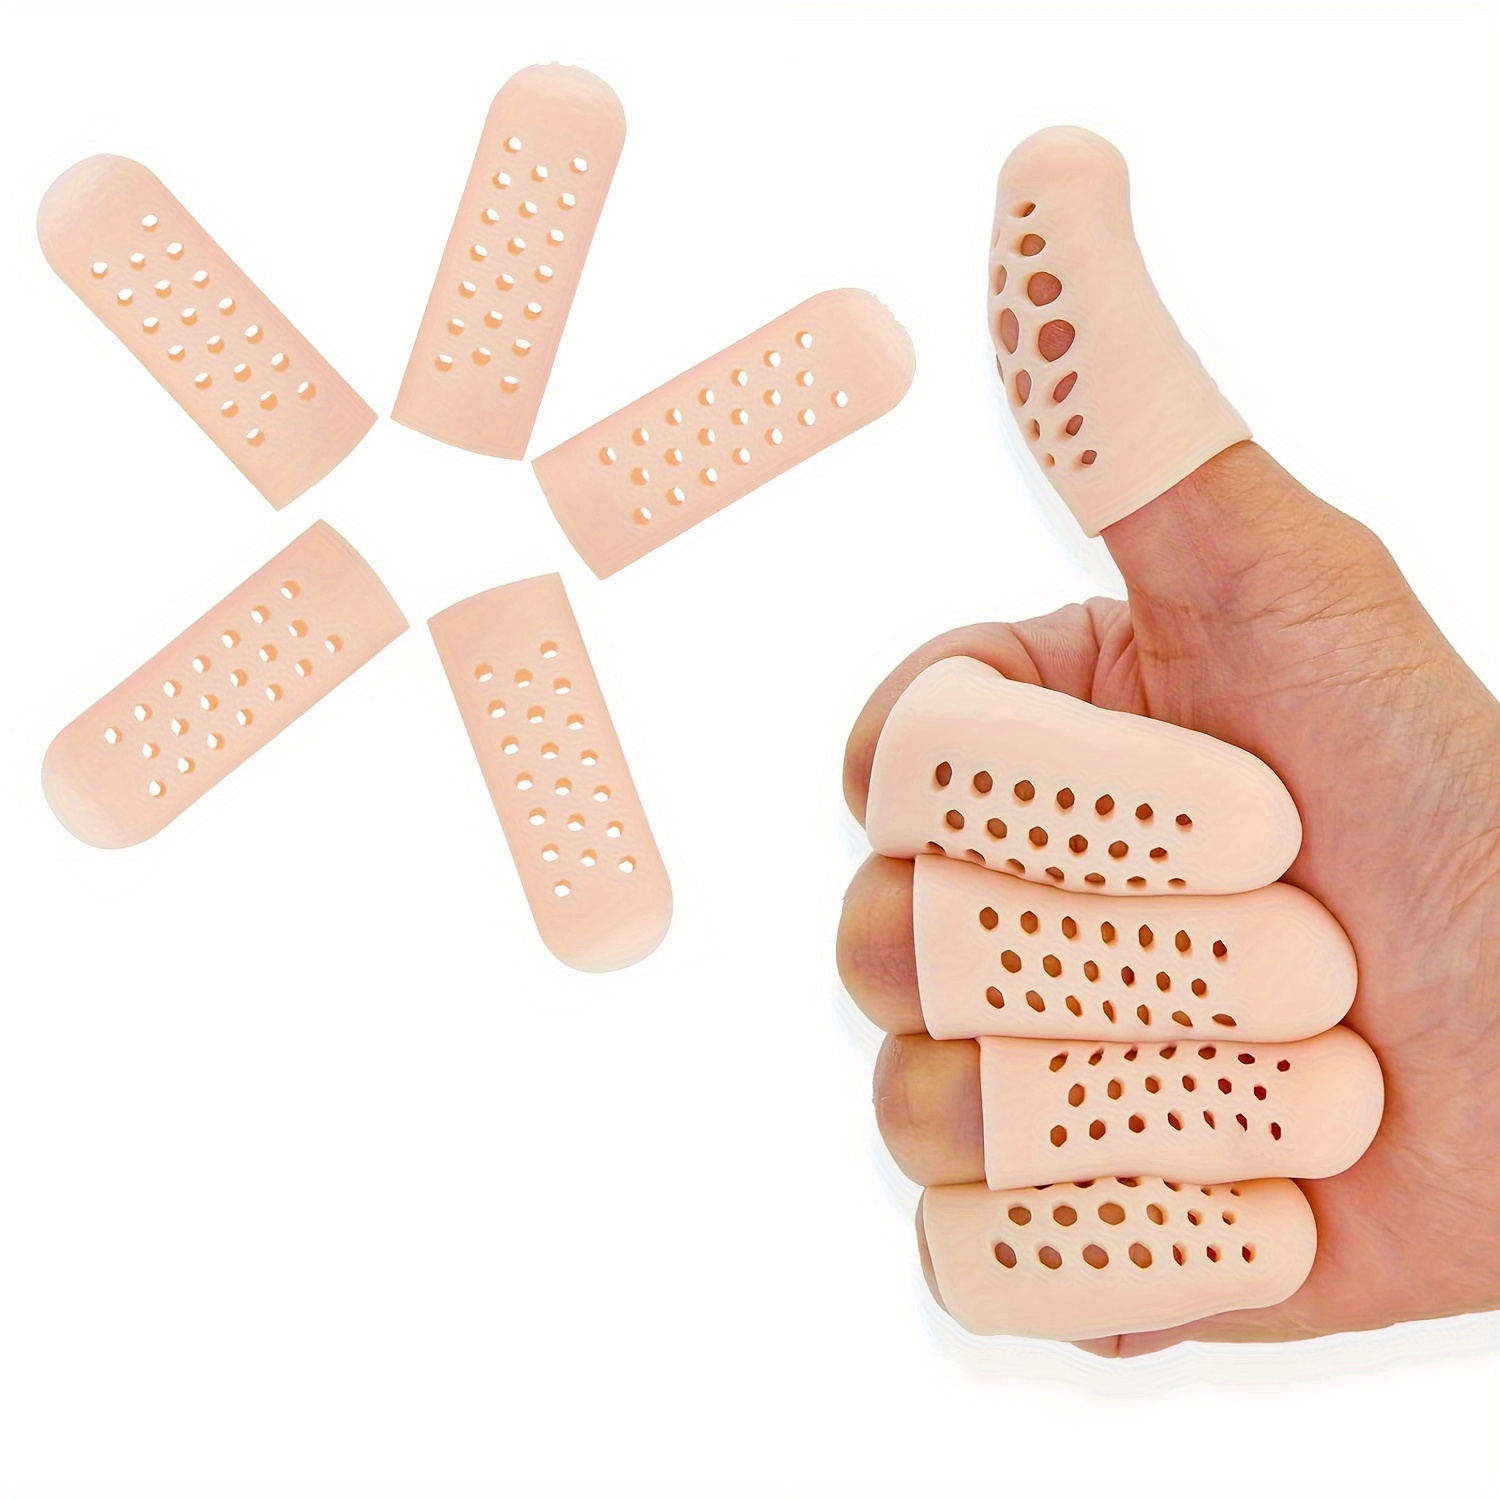  Protectores de dedos de silicona para dedos, mangas de gel,  tubos de dedos que ayudan a amortiguar y reducir el dolor de callos,  ampollas y uñas encarnadas : Salud y Hogar